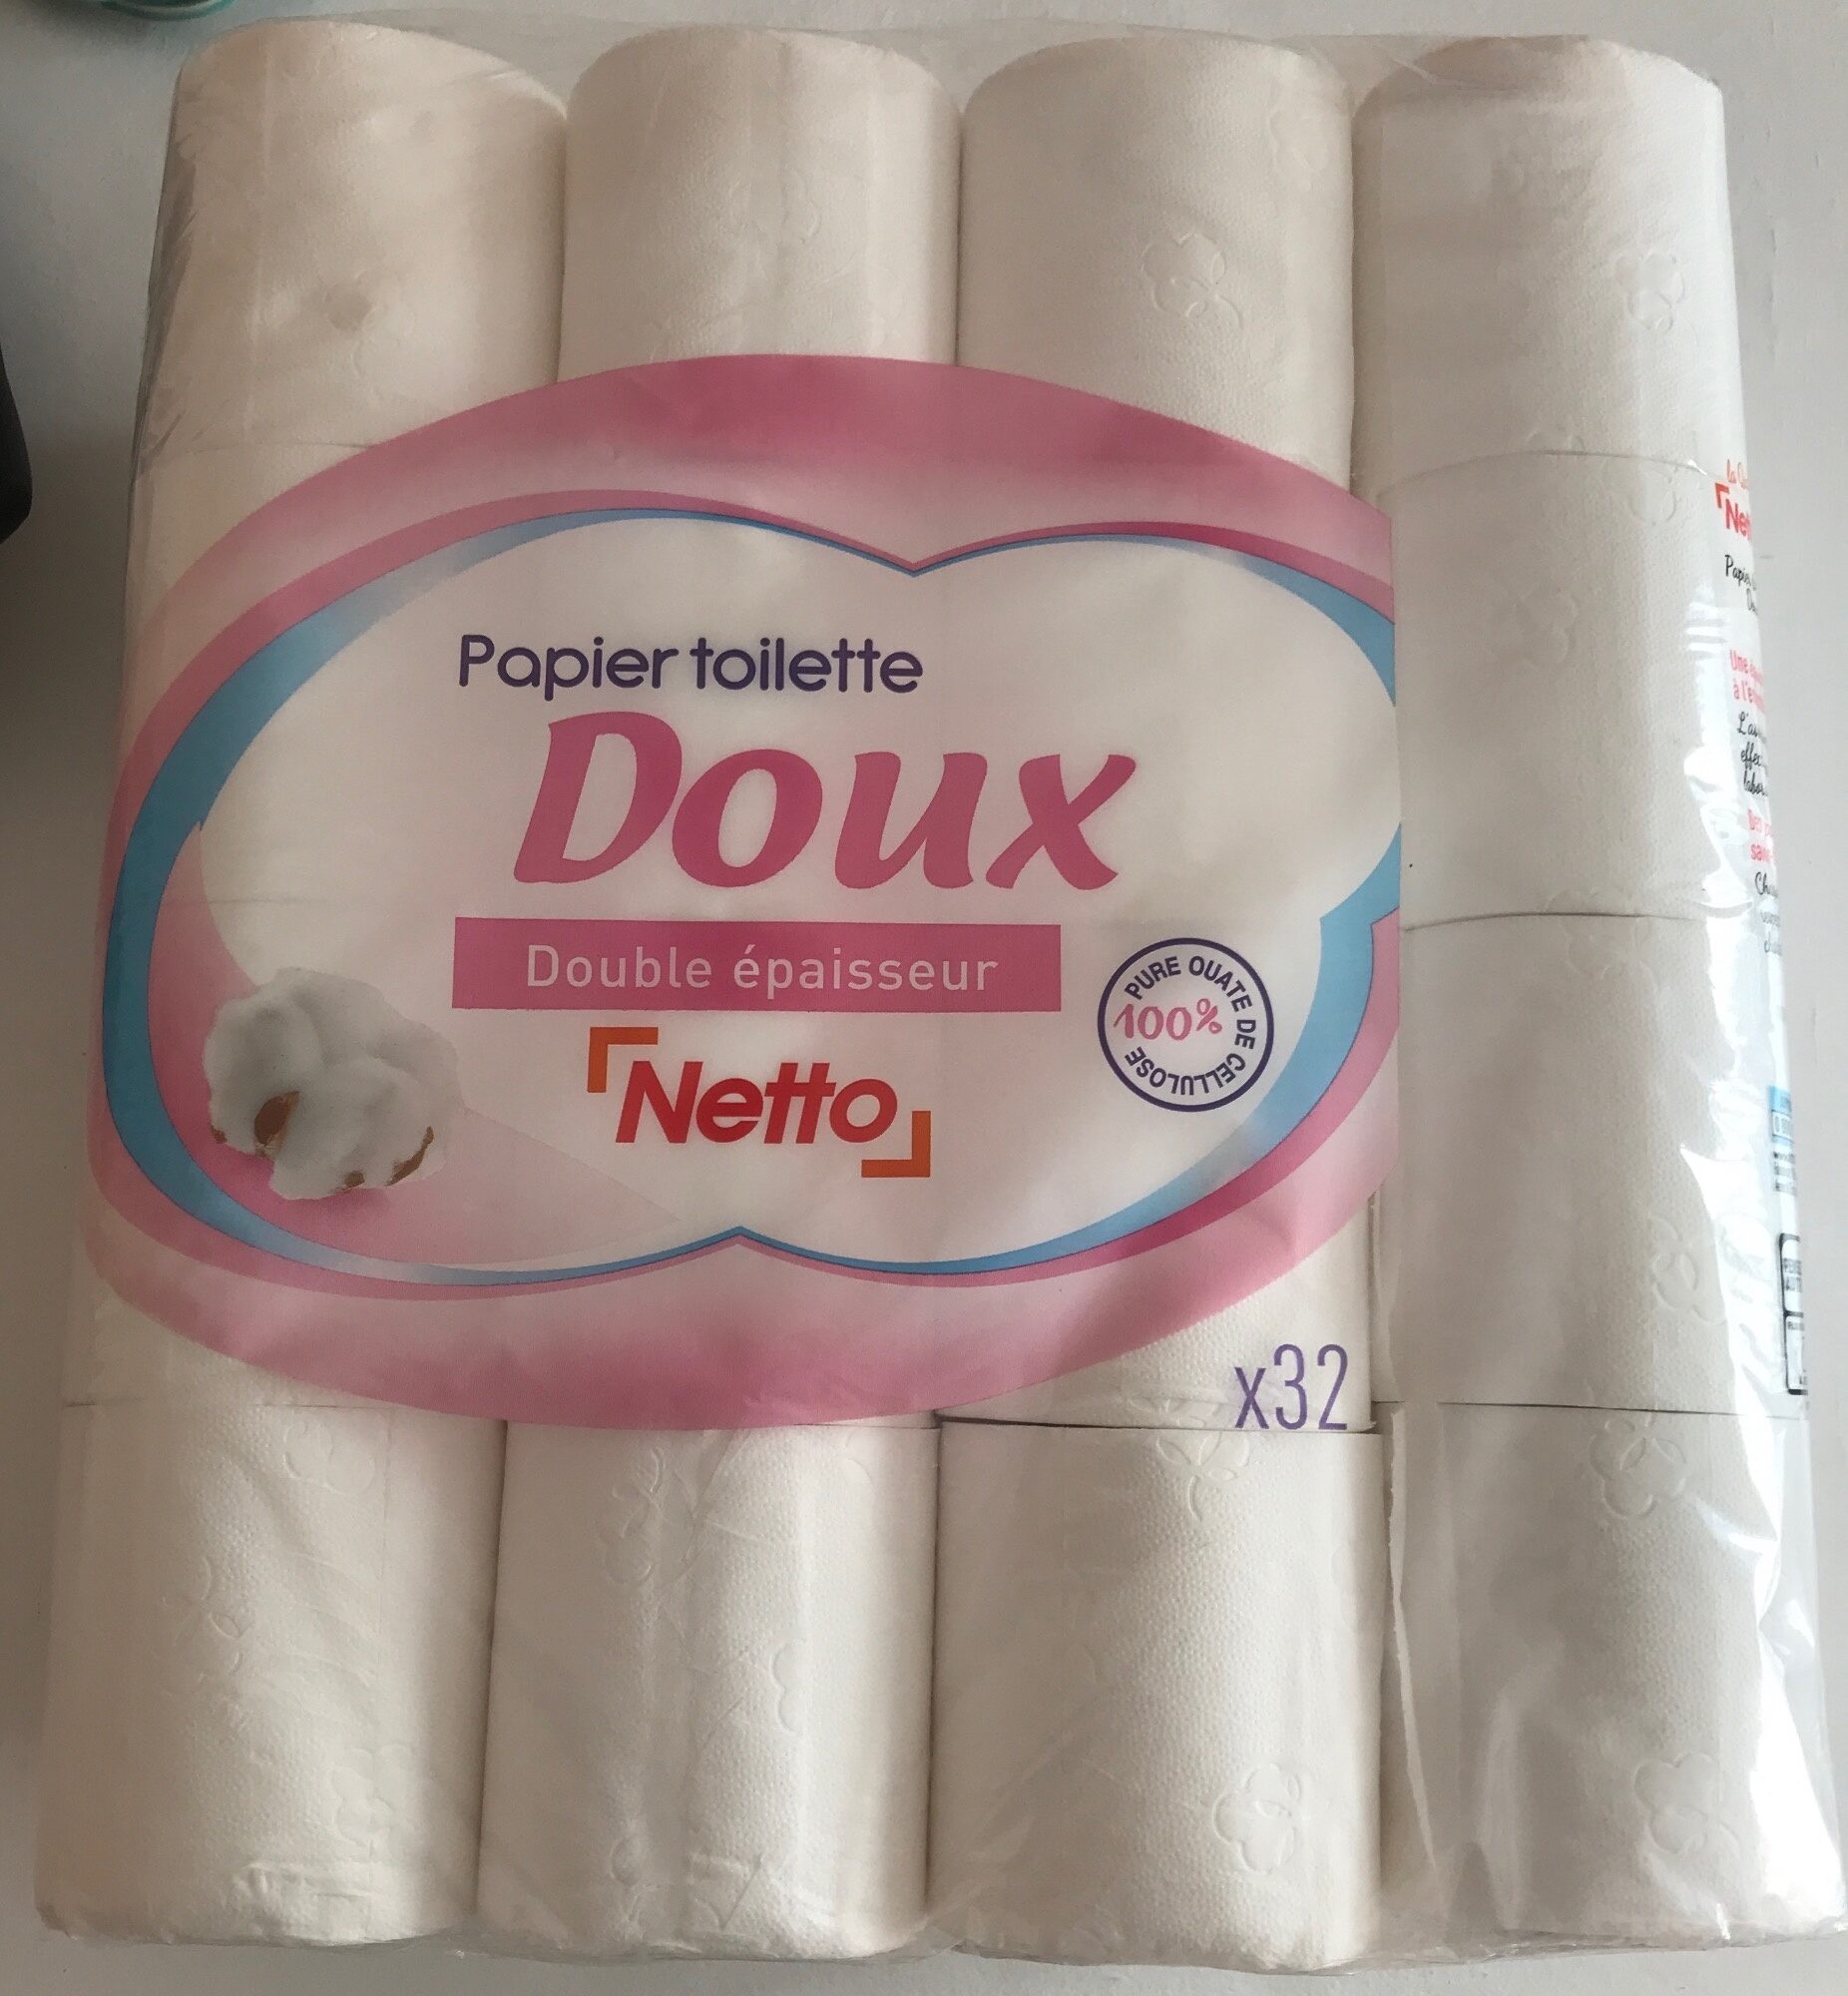 Papier toilette Doux double épaisseur - Product - fr